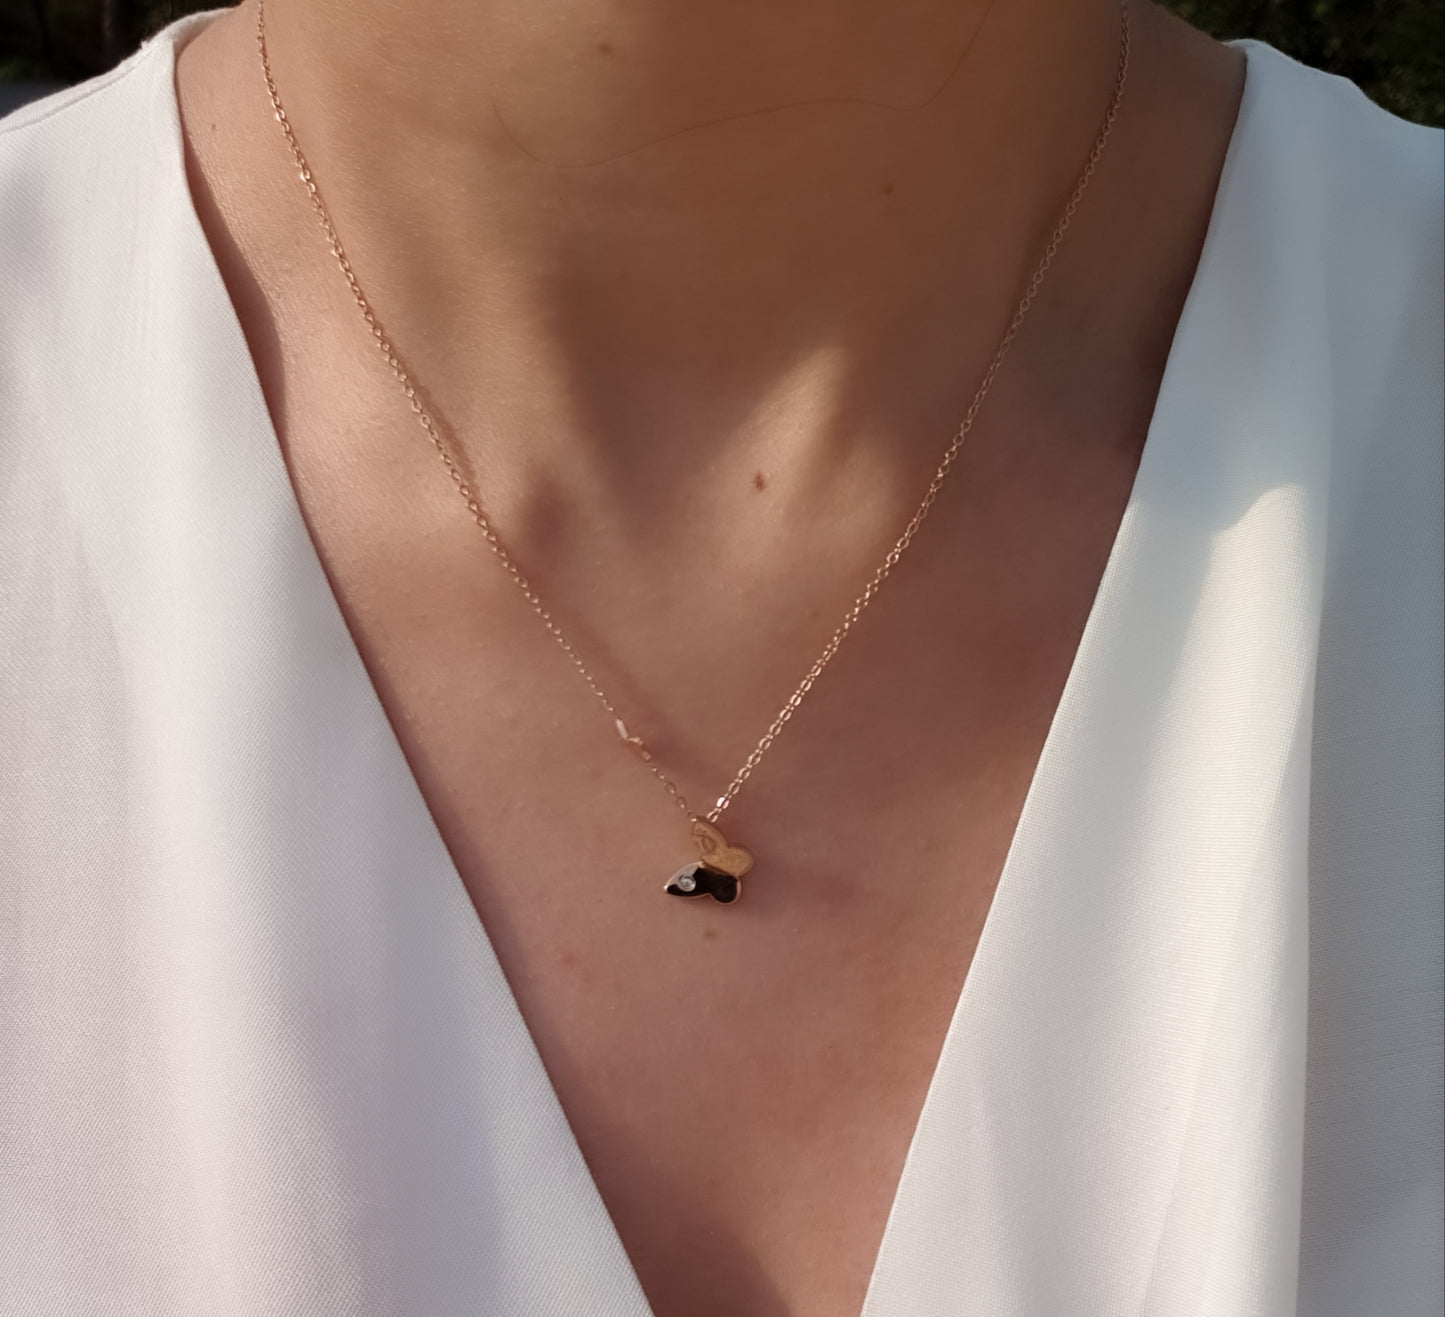 Leema Butterfly Necklace